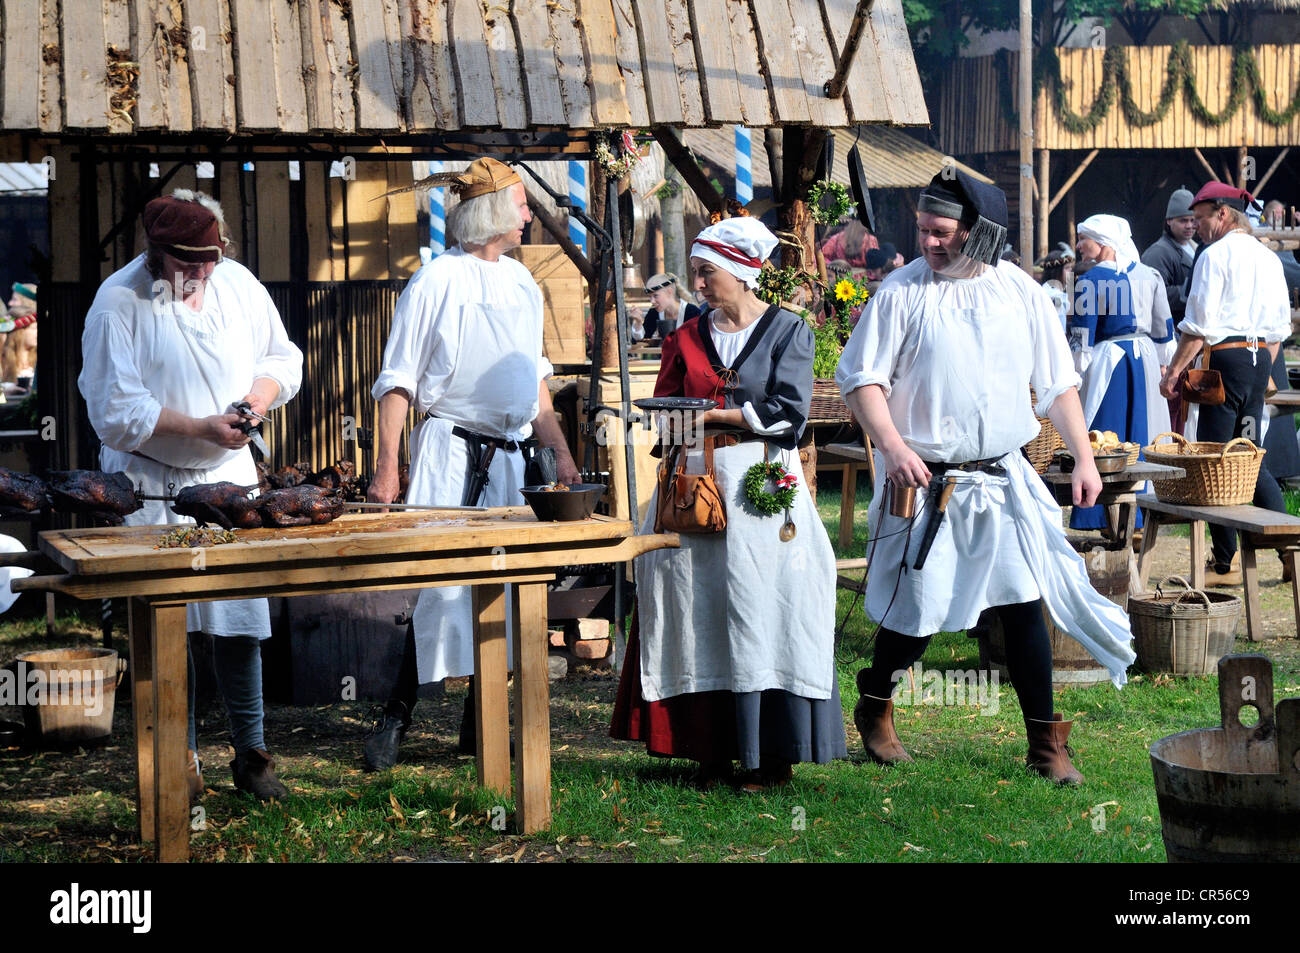 Alltag in ein mittelalterliches Lager während der Landshuter Hochzeit 2009, eines der größten historischen Festzüge in Europa, Landshut Stockfoto